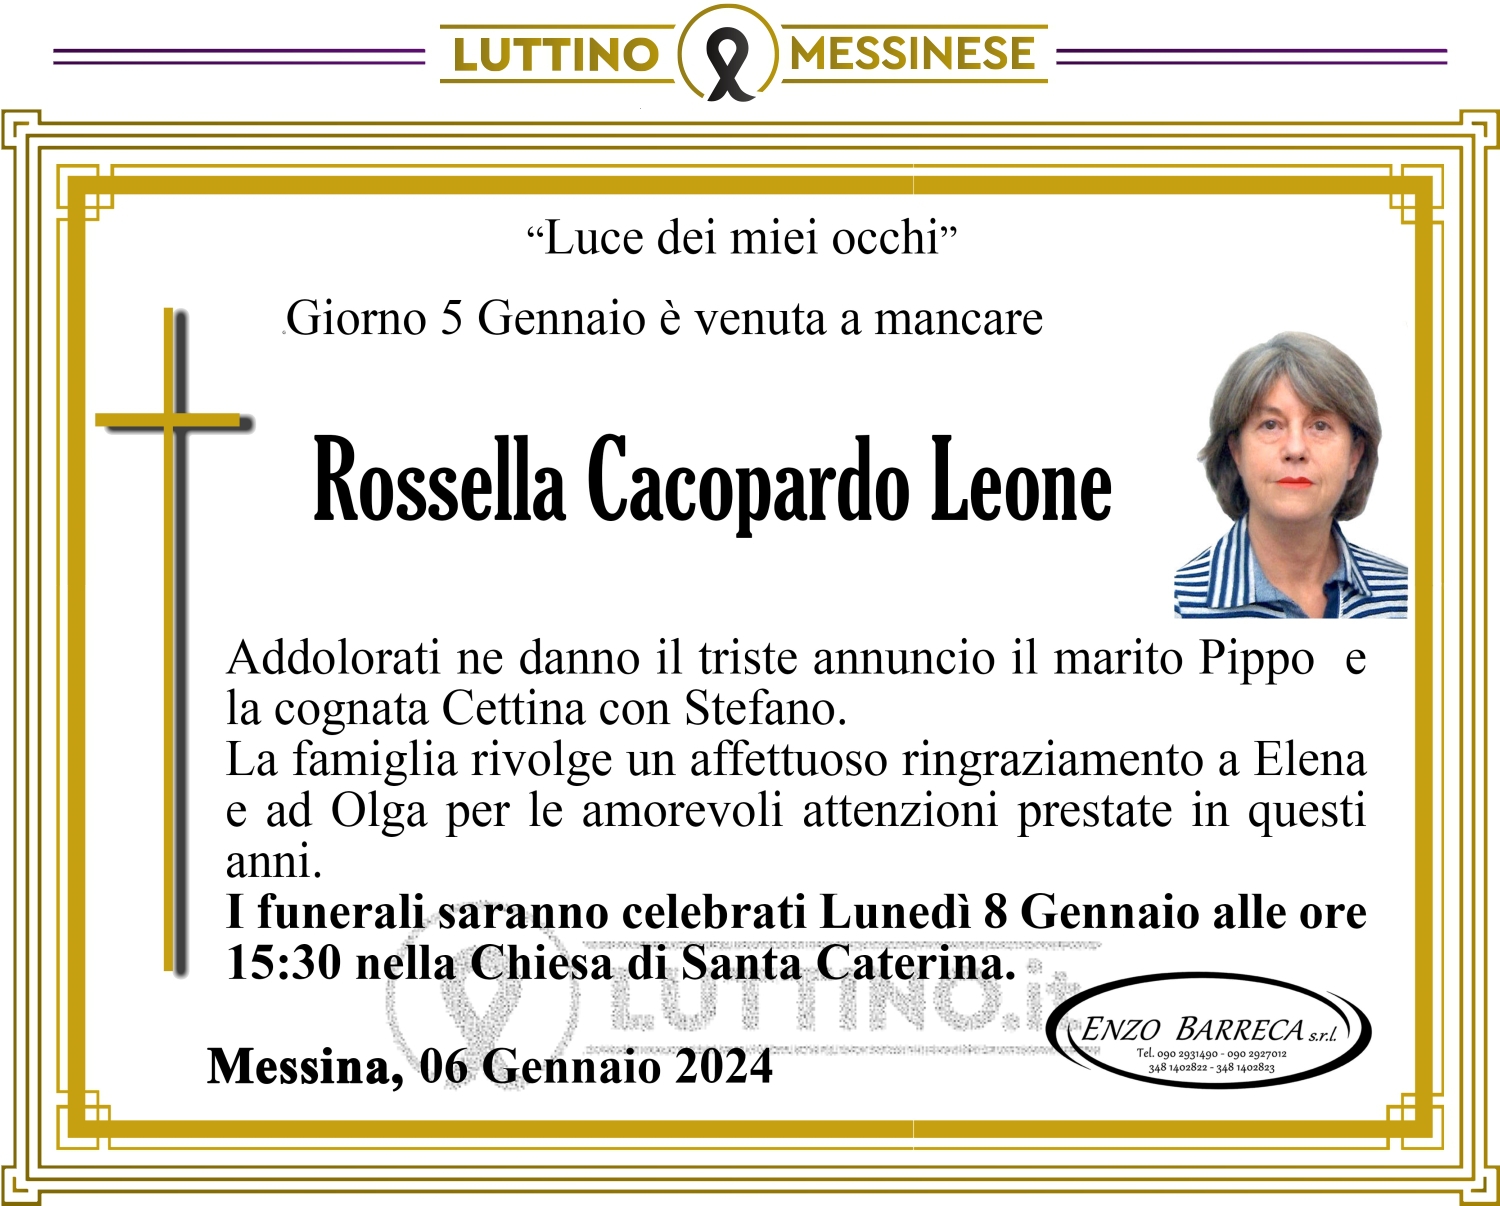 Rossella Cacopardo Leone